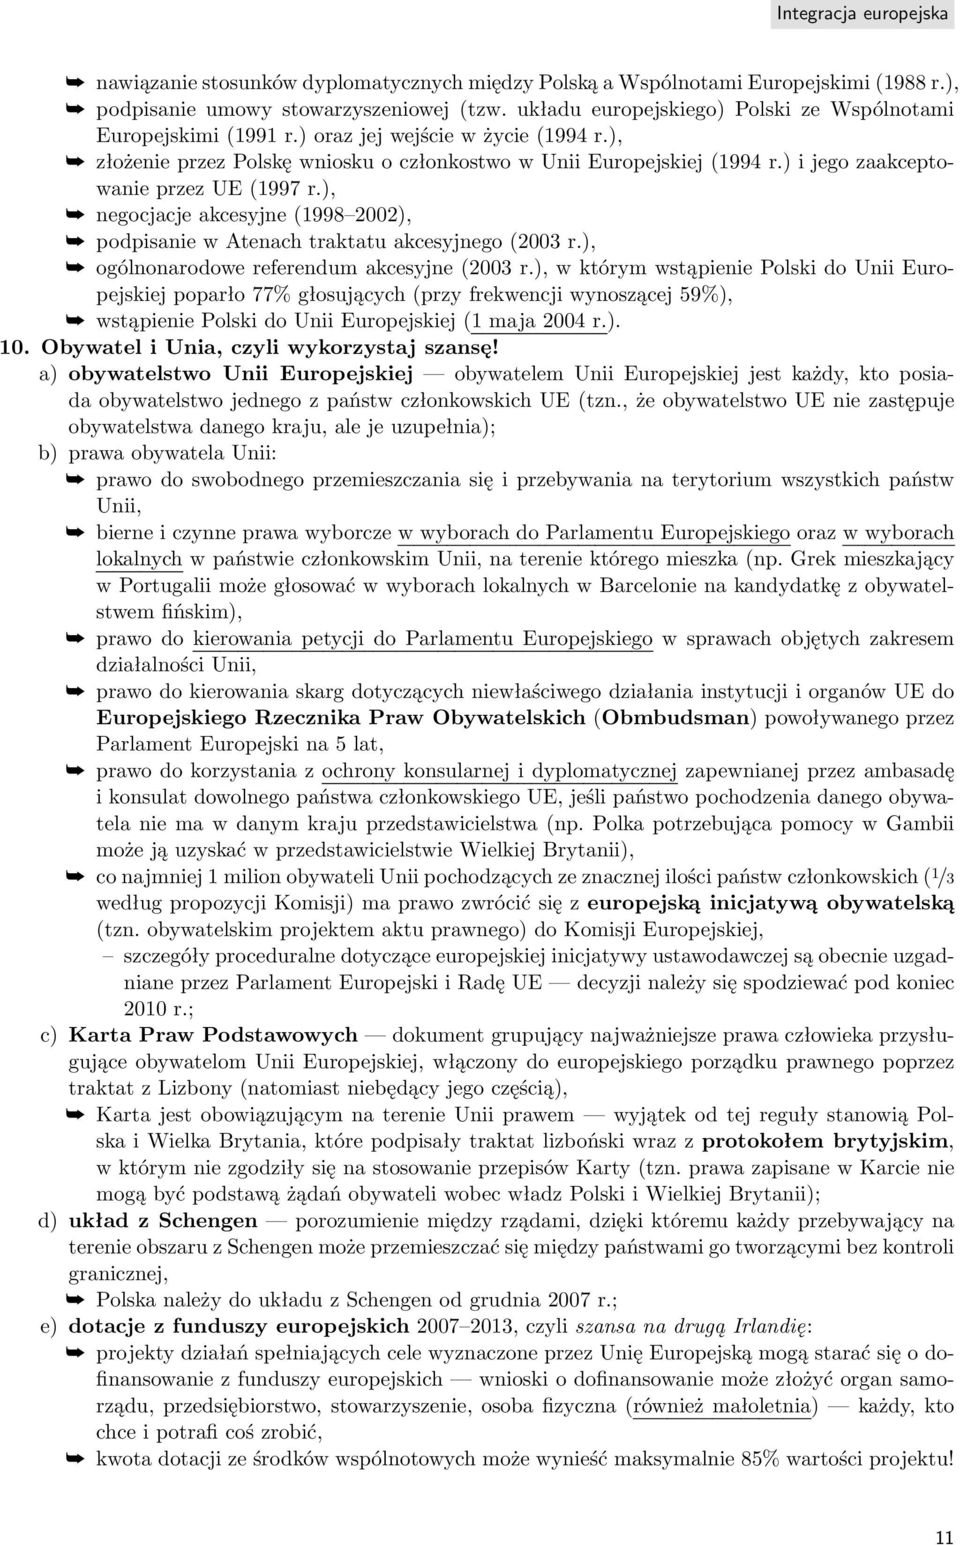 ), negocjacje akcesyjne (1998 2002), podpisanie w Atenach traktatu akcesyjnego (2003 r.), ogólnonarodowe referendum akcesyjne (2003 r.